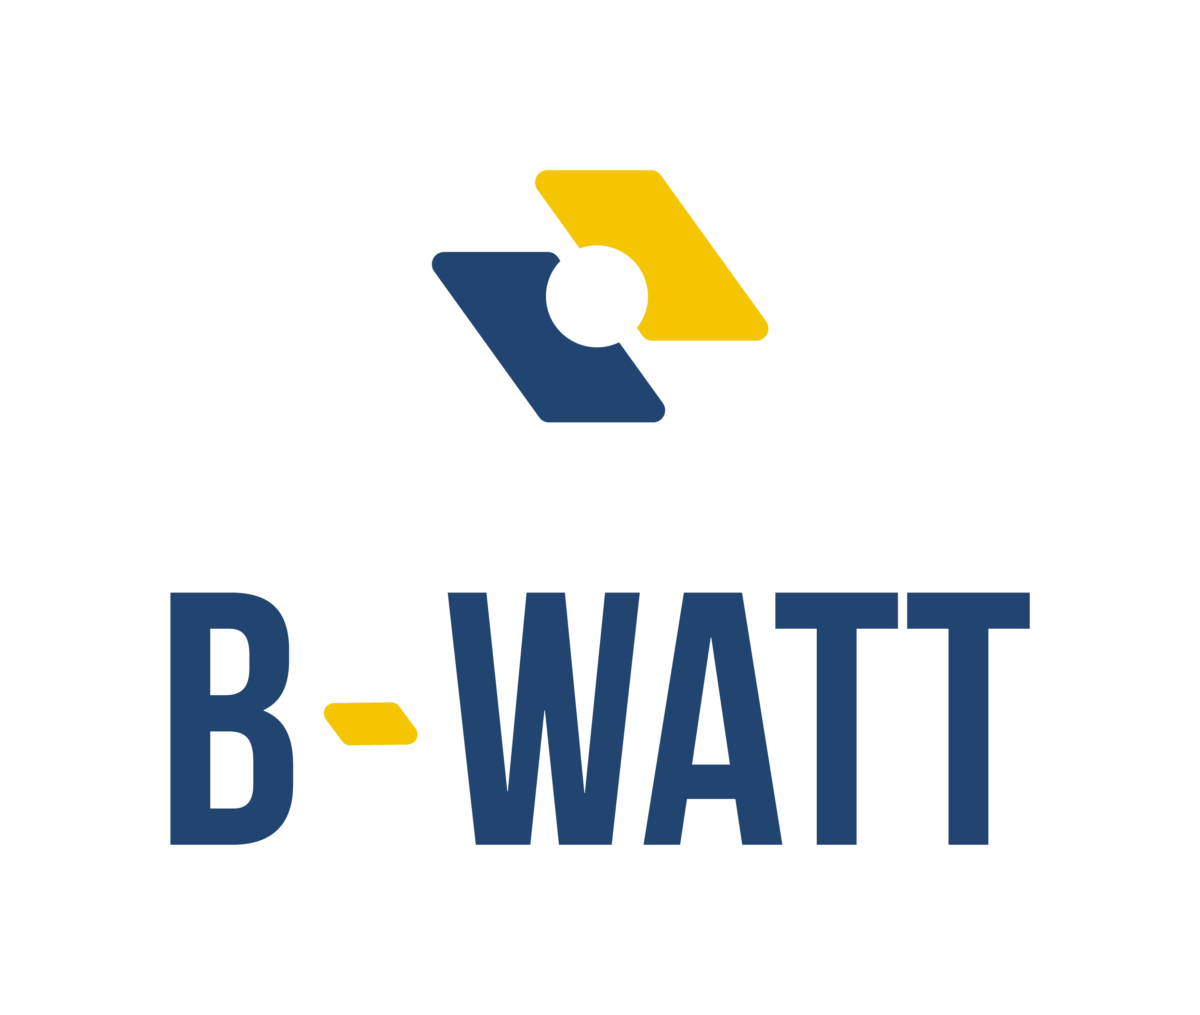 B-Watt